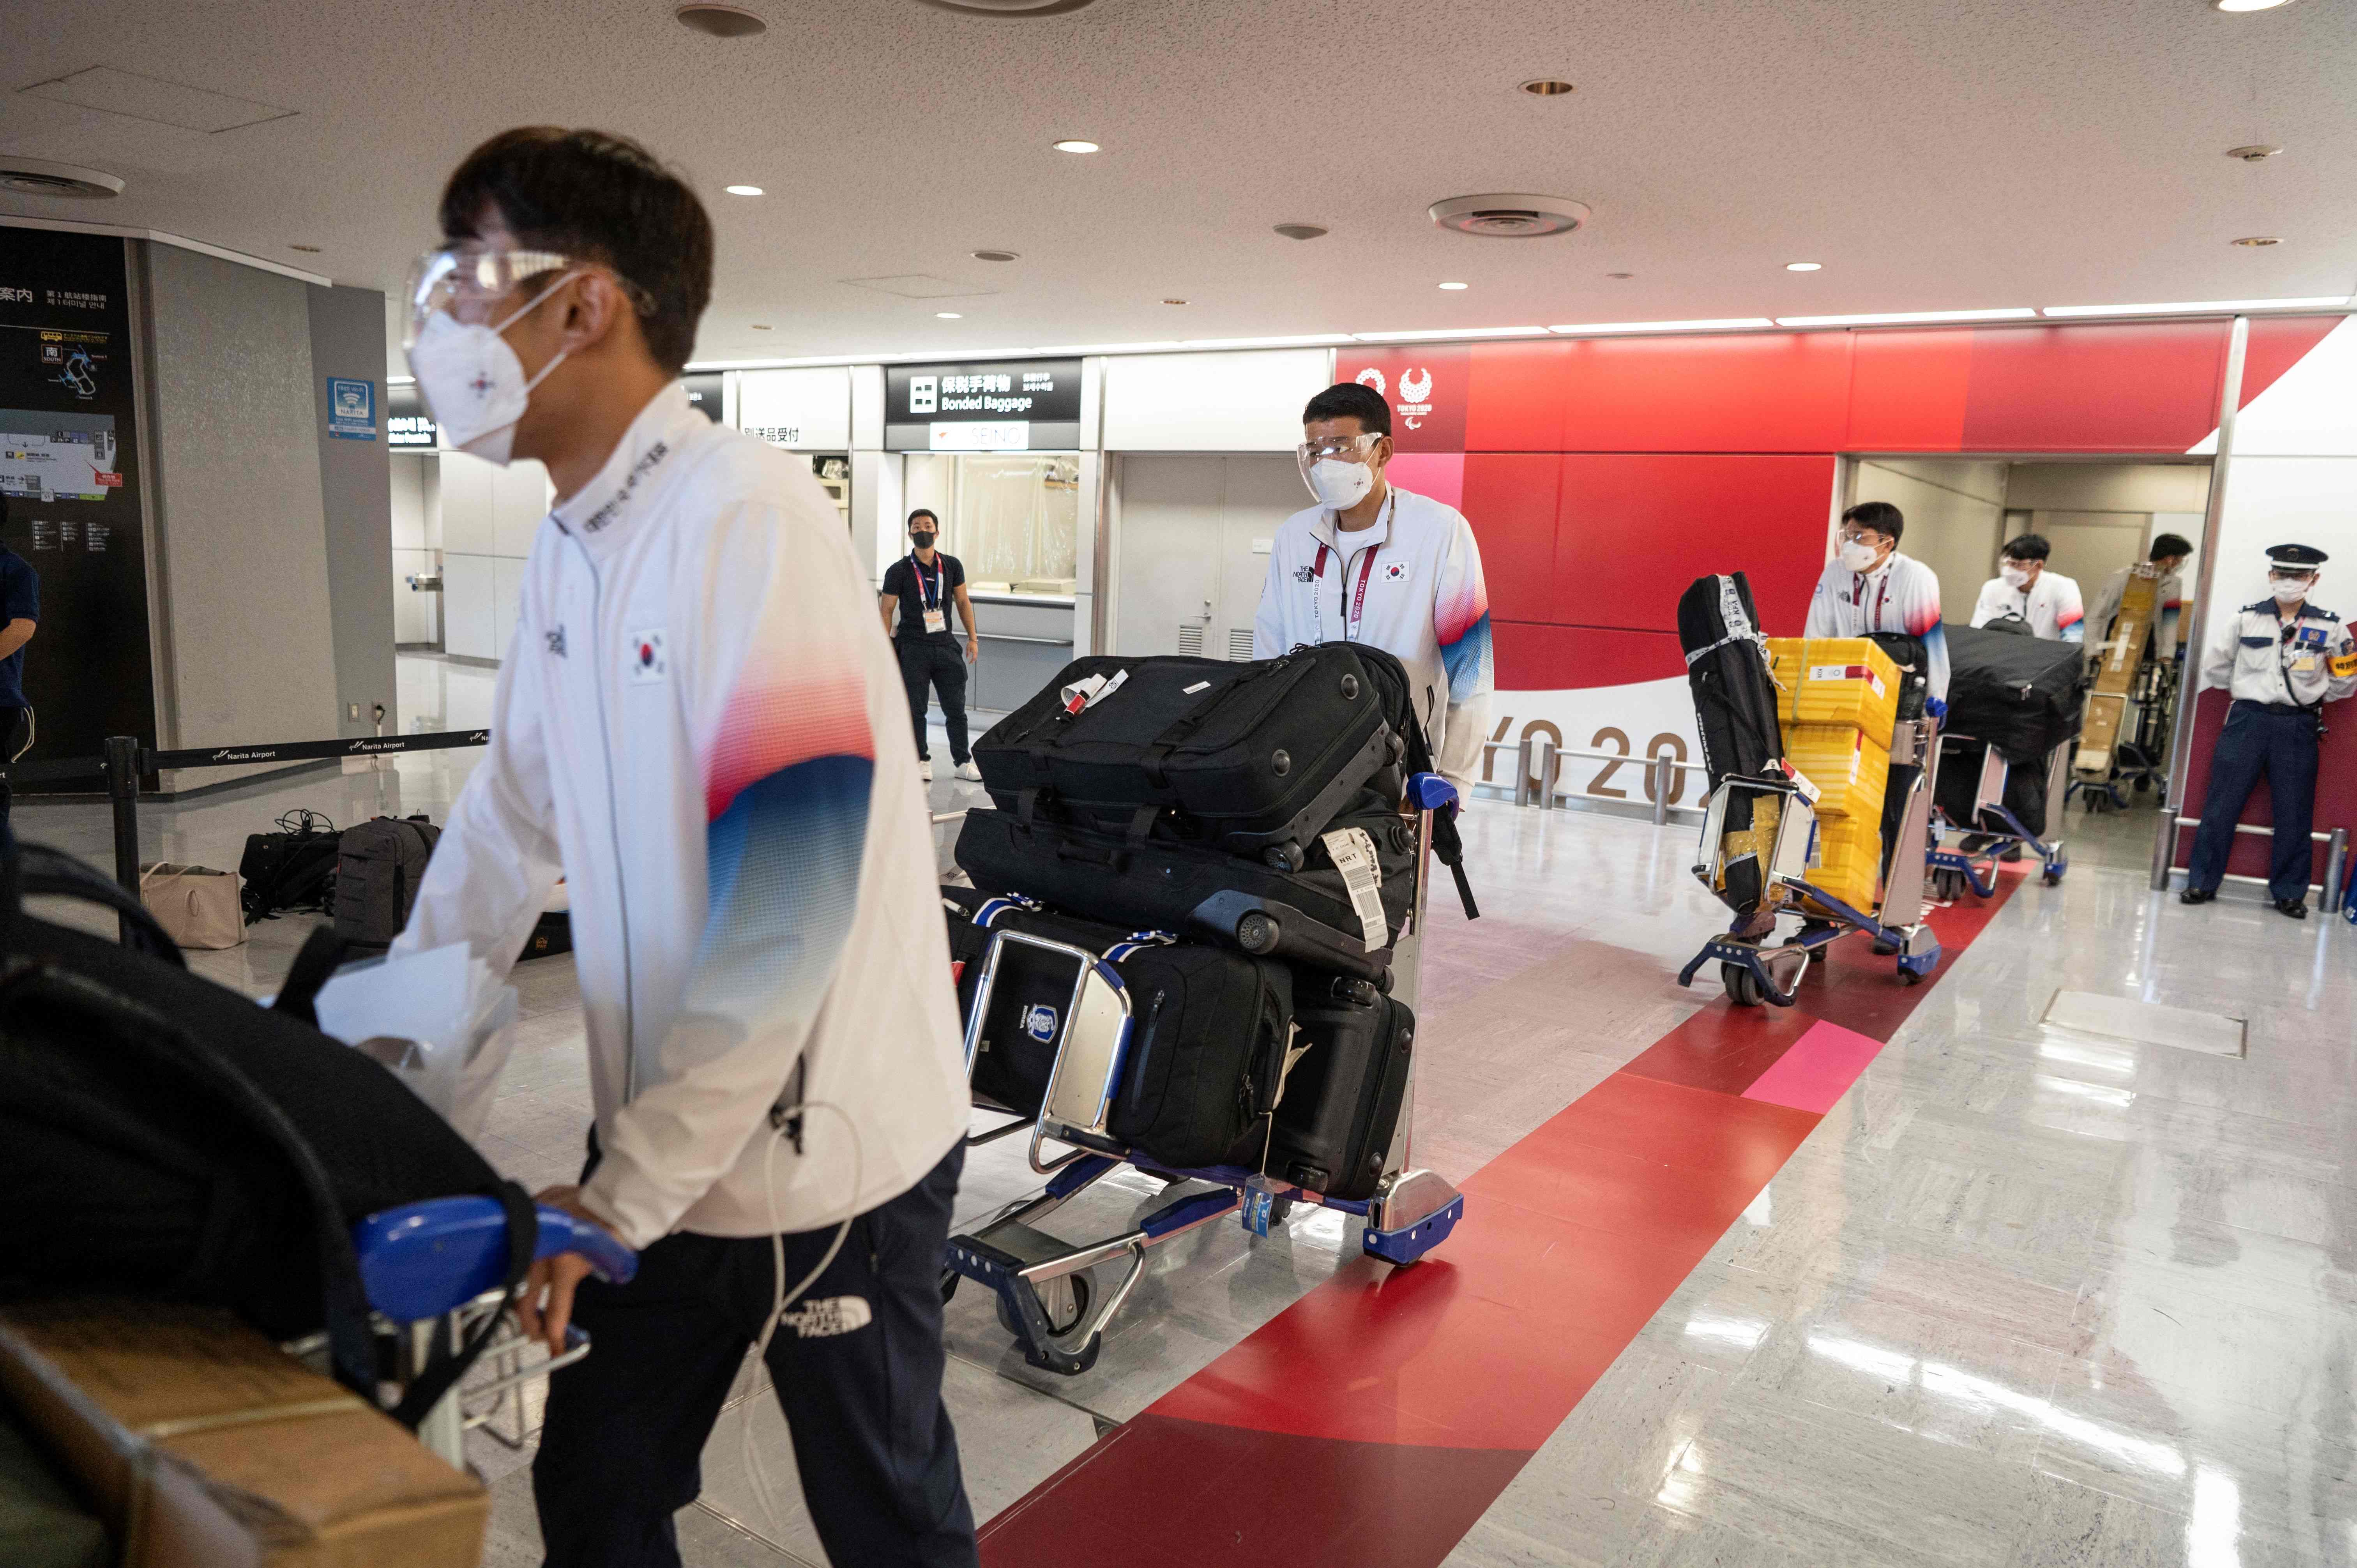 韩国前奥运冠军柳承敏抵达日本后无症状确诊，正接受隔离。图为韩国男足队员抵达成田国际机场。（法新社照片）

